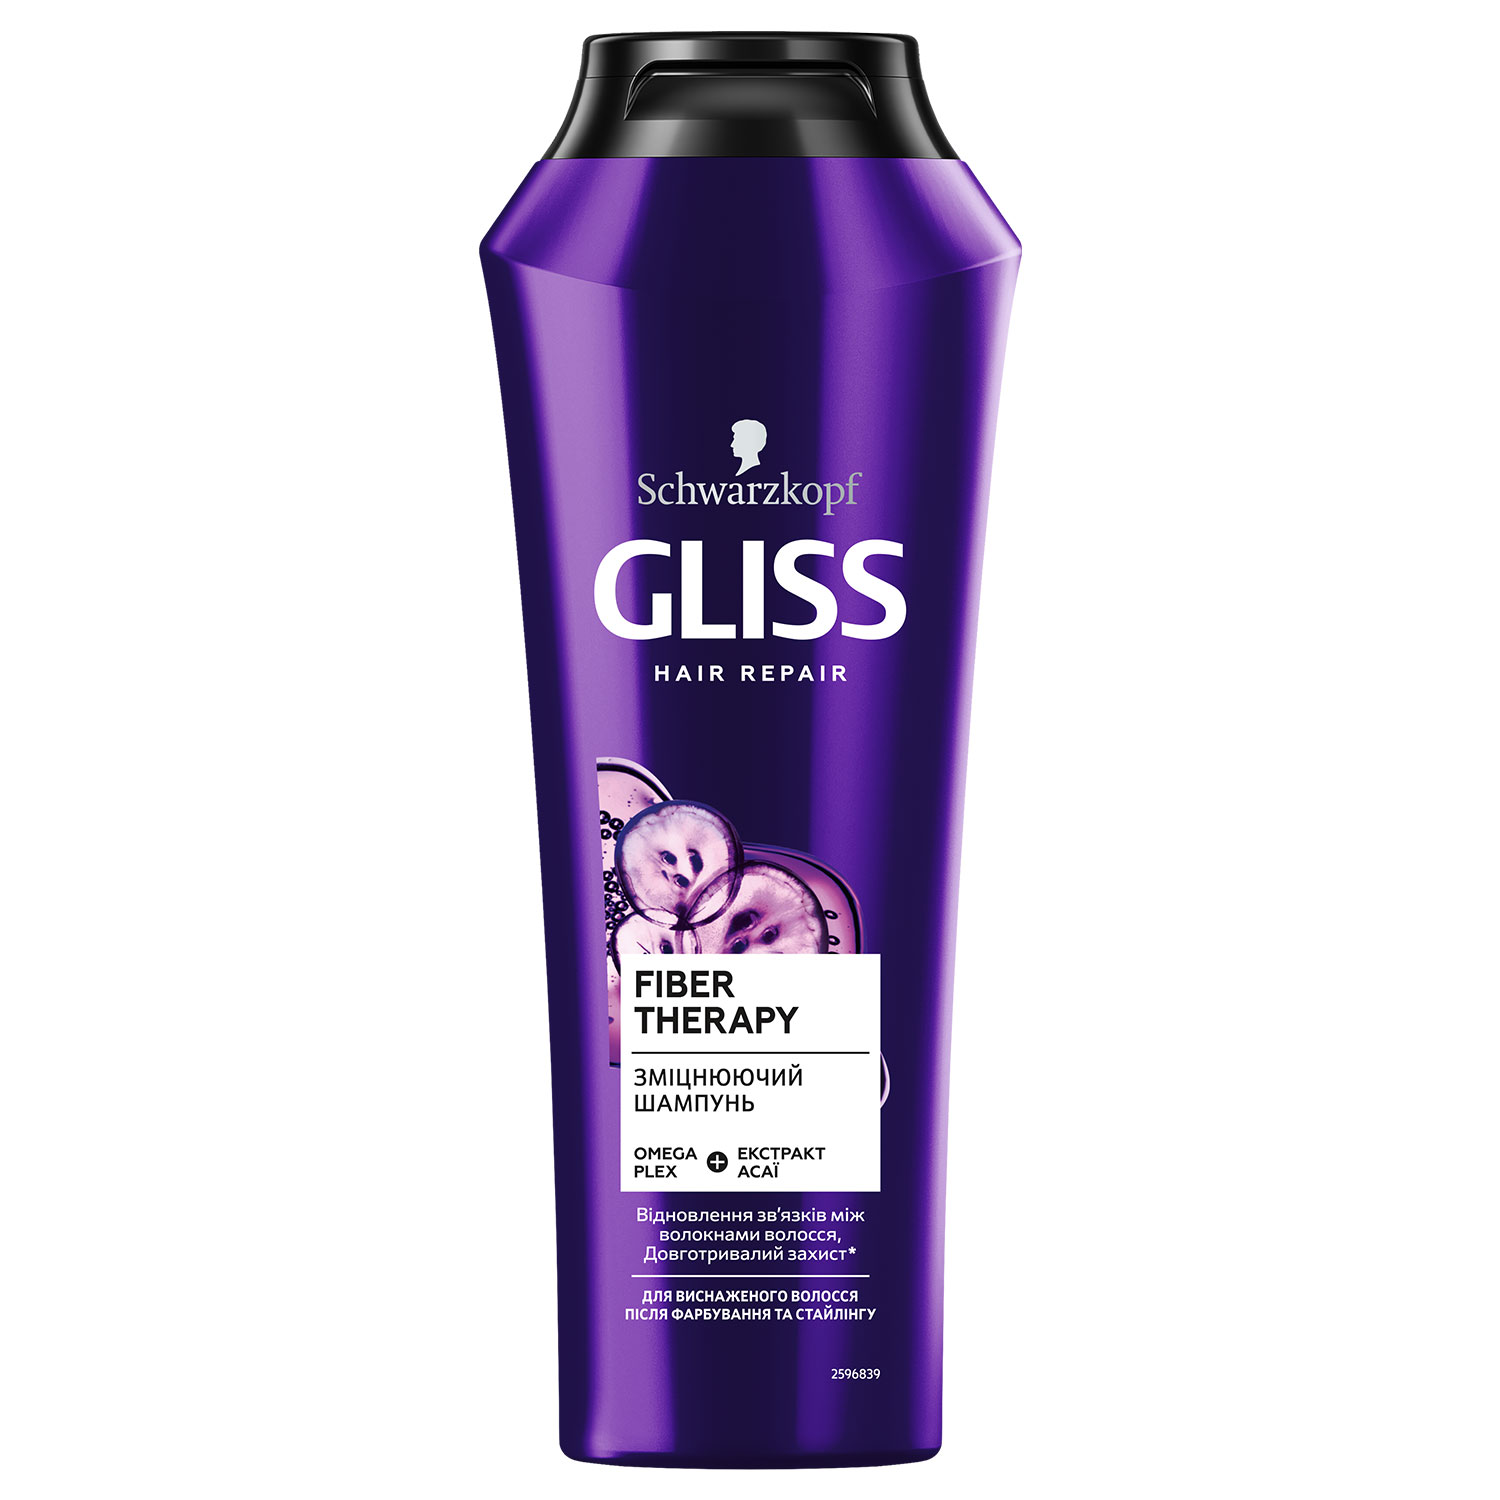 Укрепляющий шампунь GLISS Fiber Therapy для истощенных волос после окрашивания и стайлинга, 250 мл